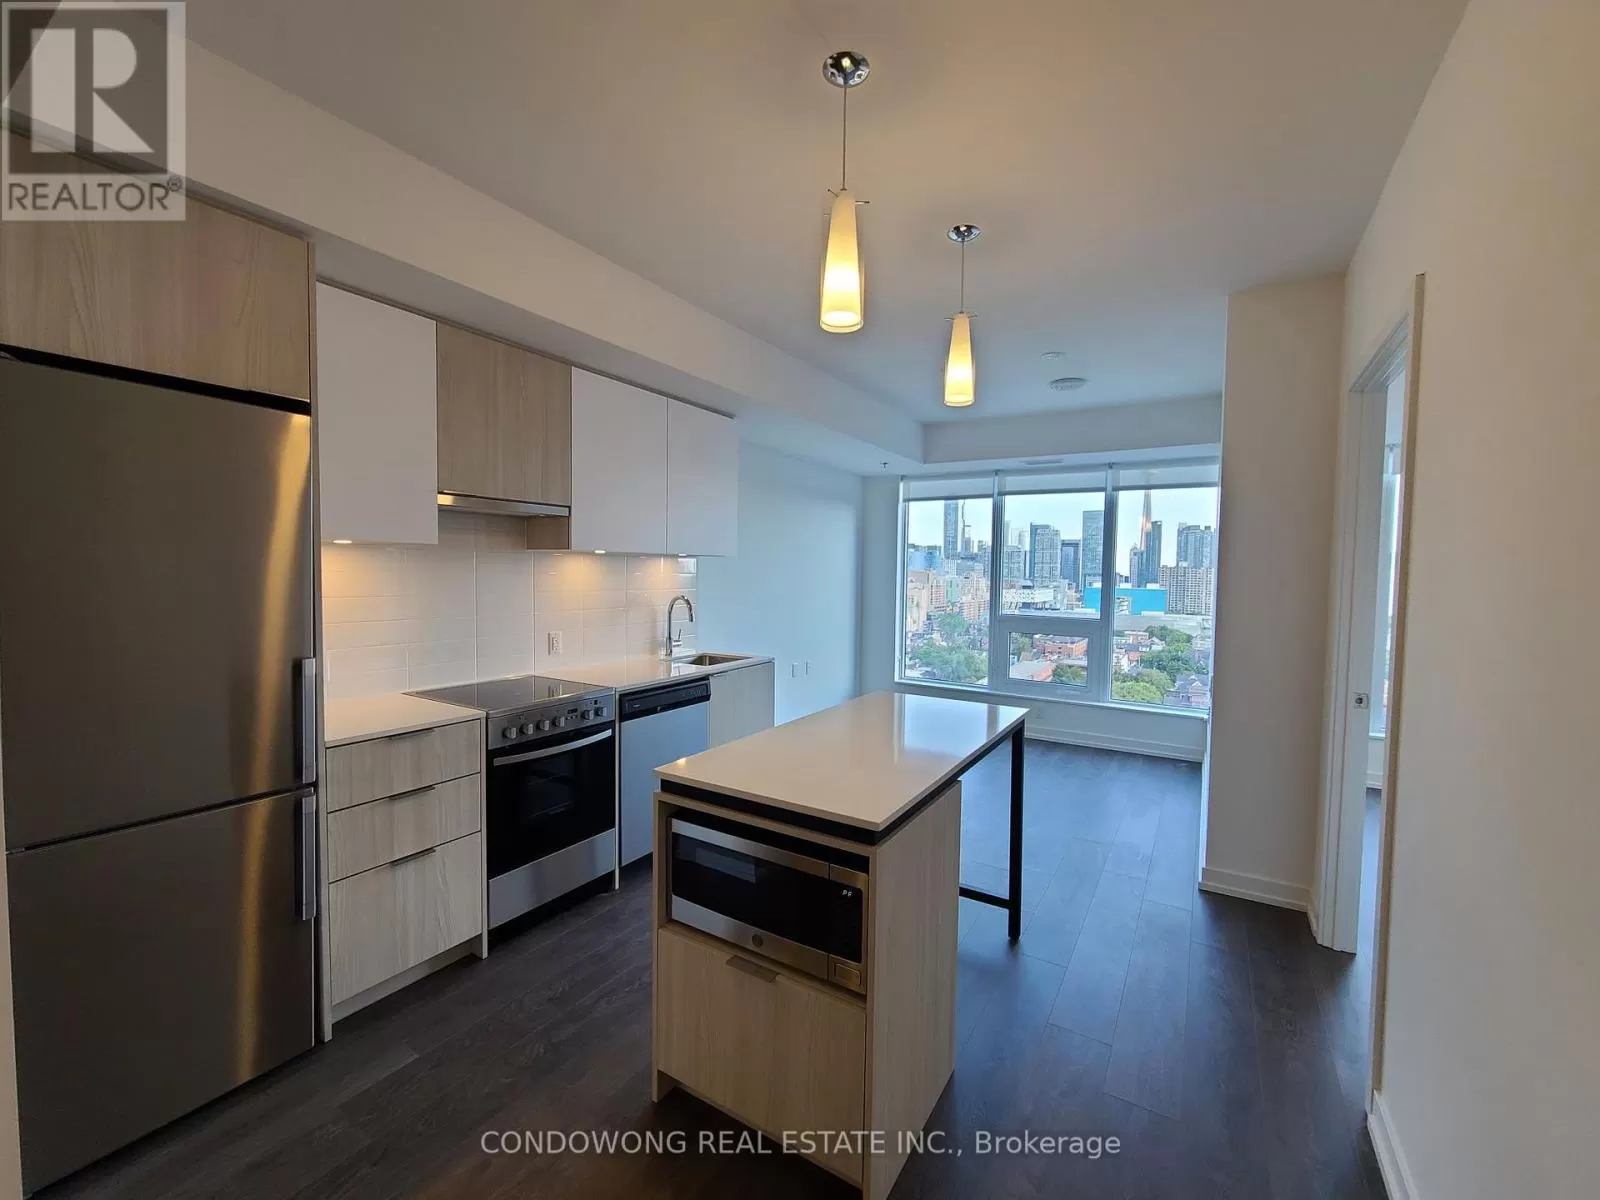 Apartment for rent: 1401 - 203 College Street, Toronto, Ontario M5T 0C8